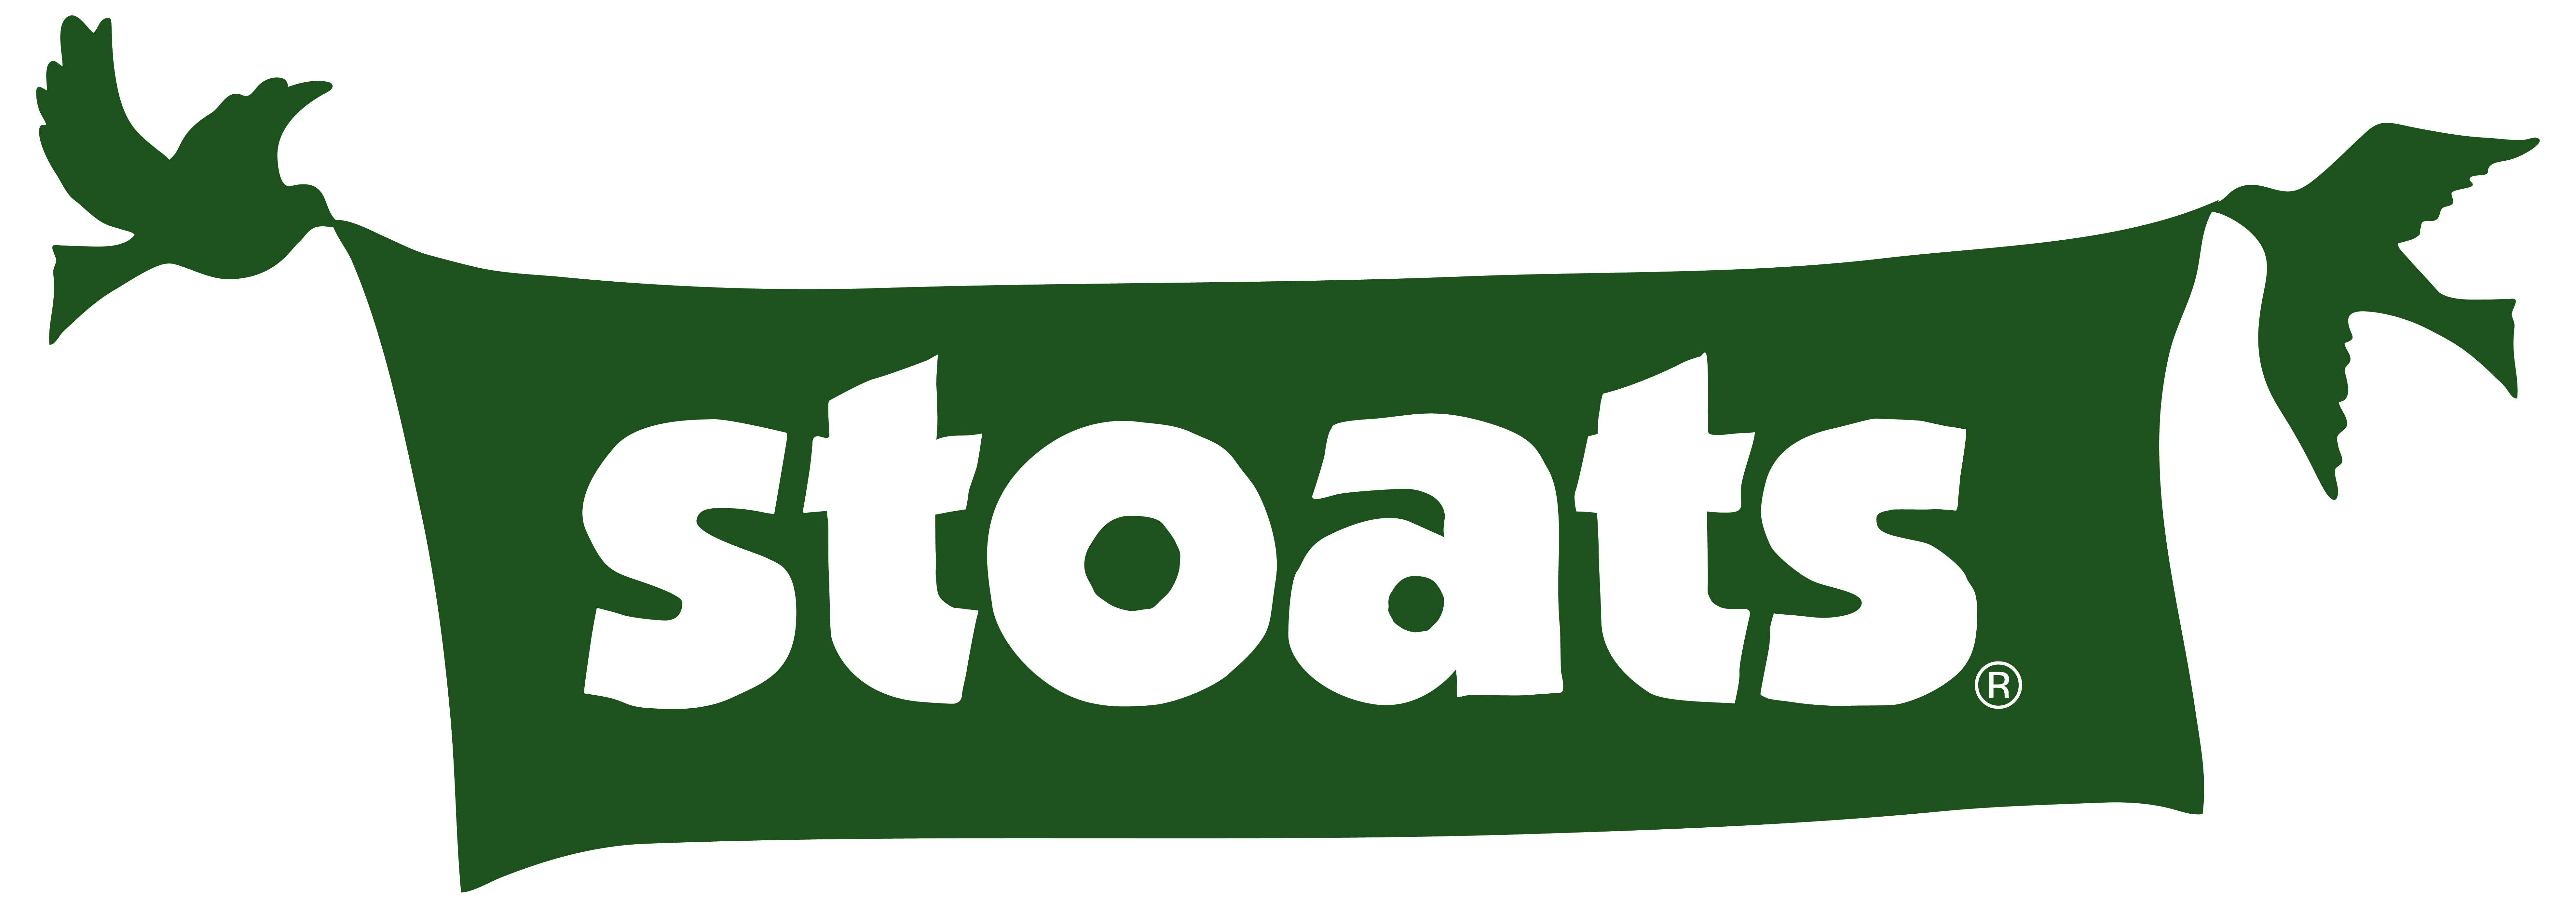 logo for Stoats